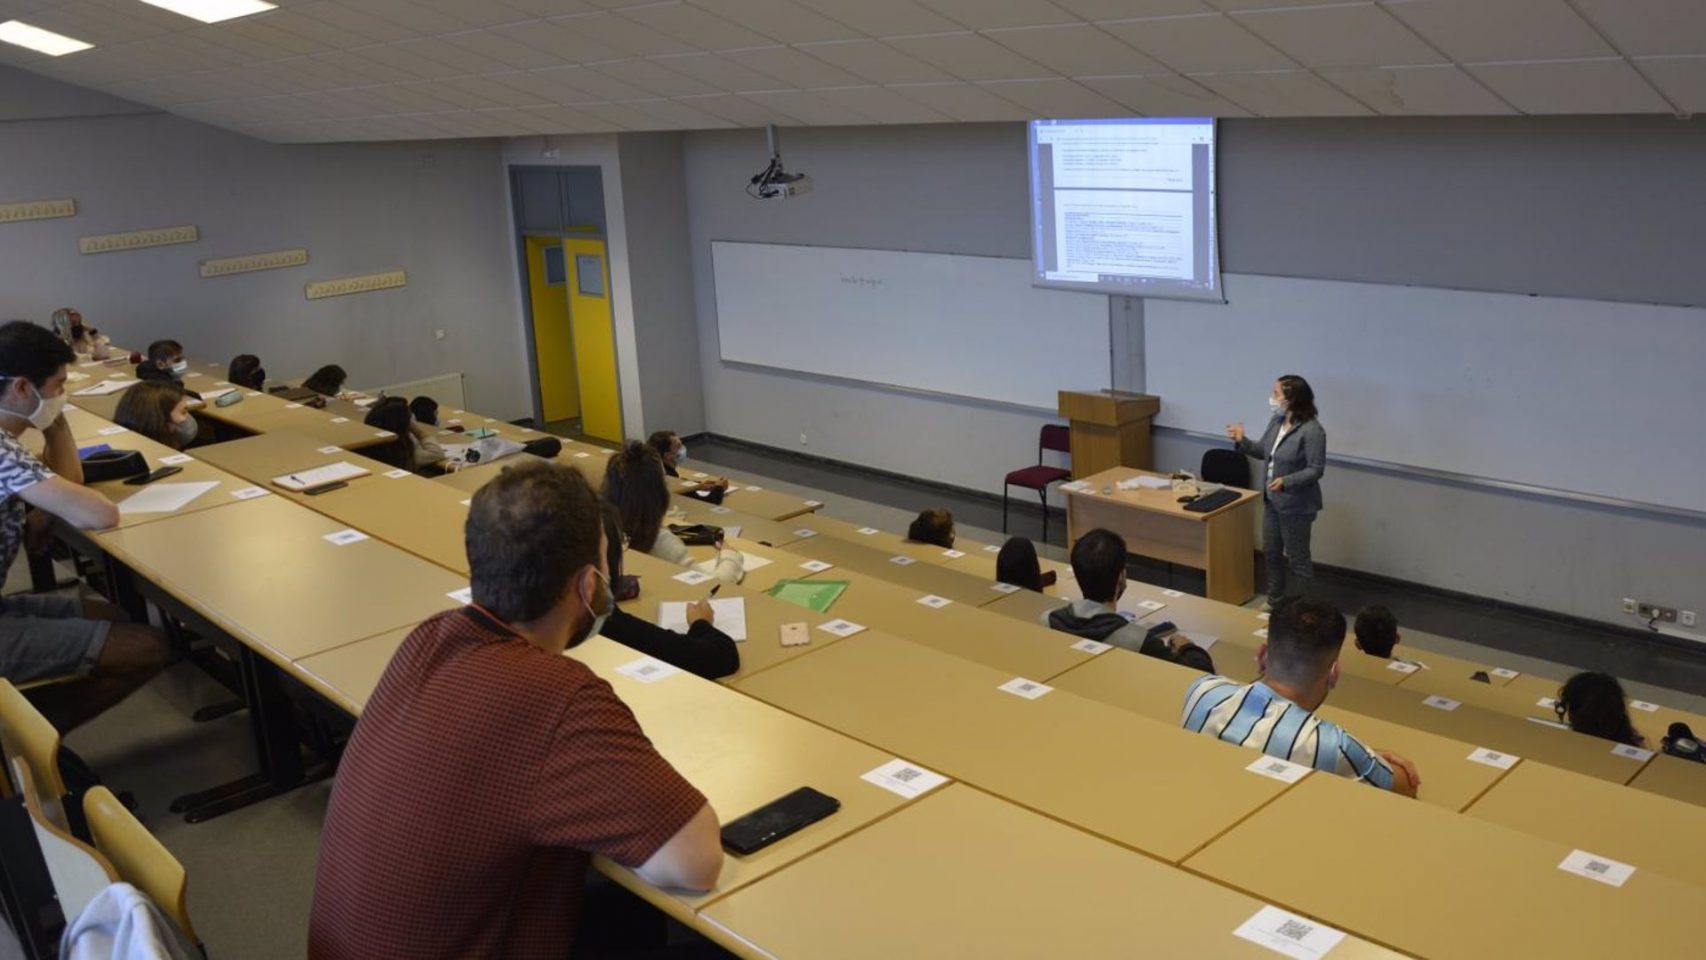 Estudiantes asisten a una clase en la Universidade de Vigo, en una imagen de archivo